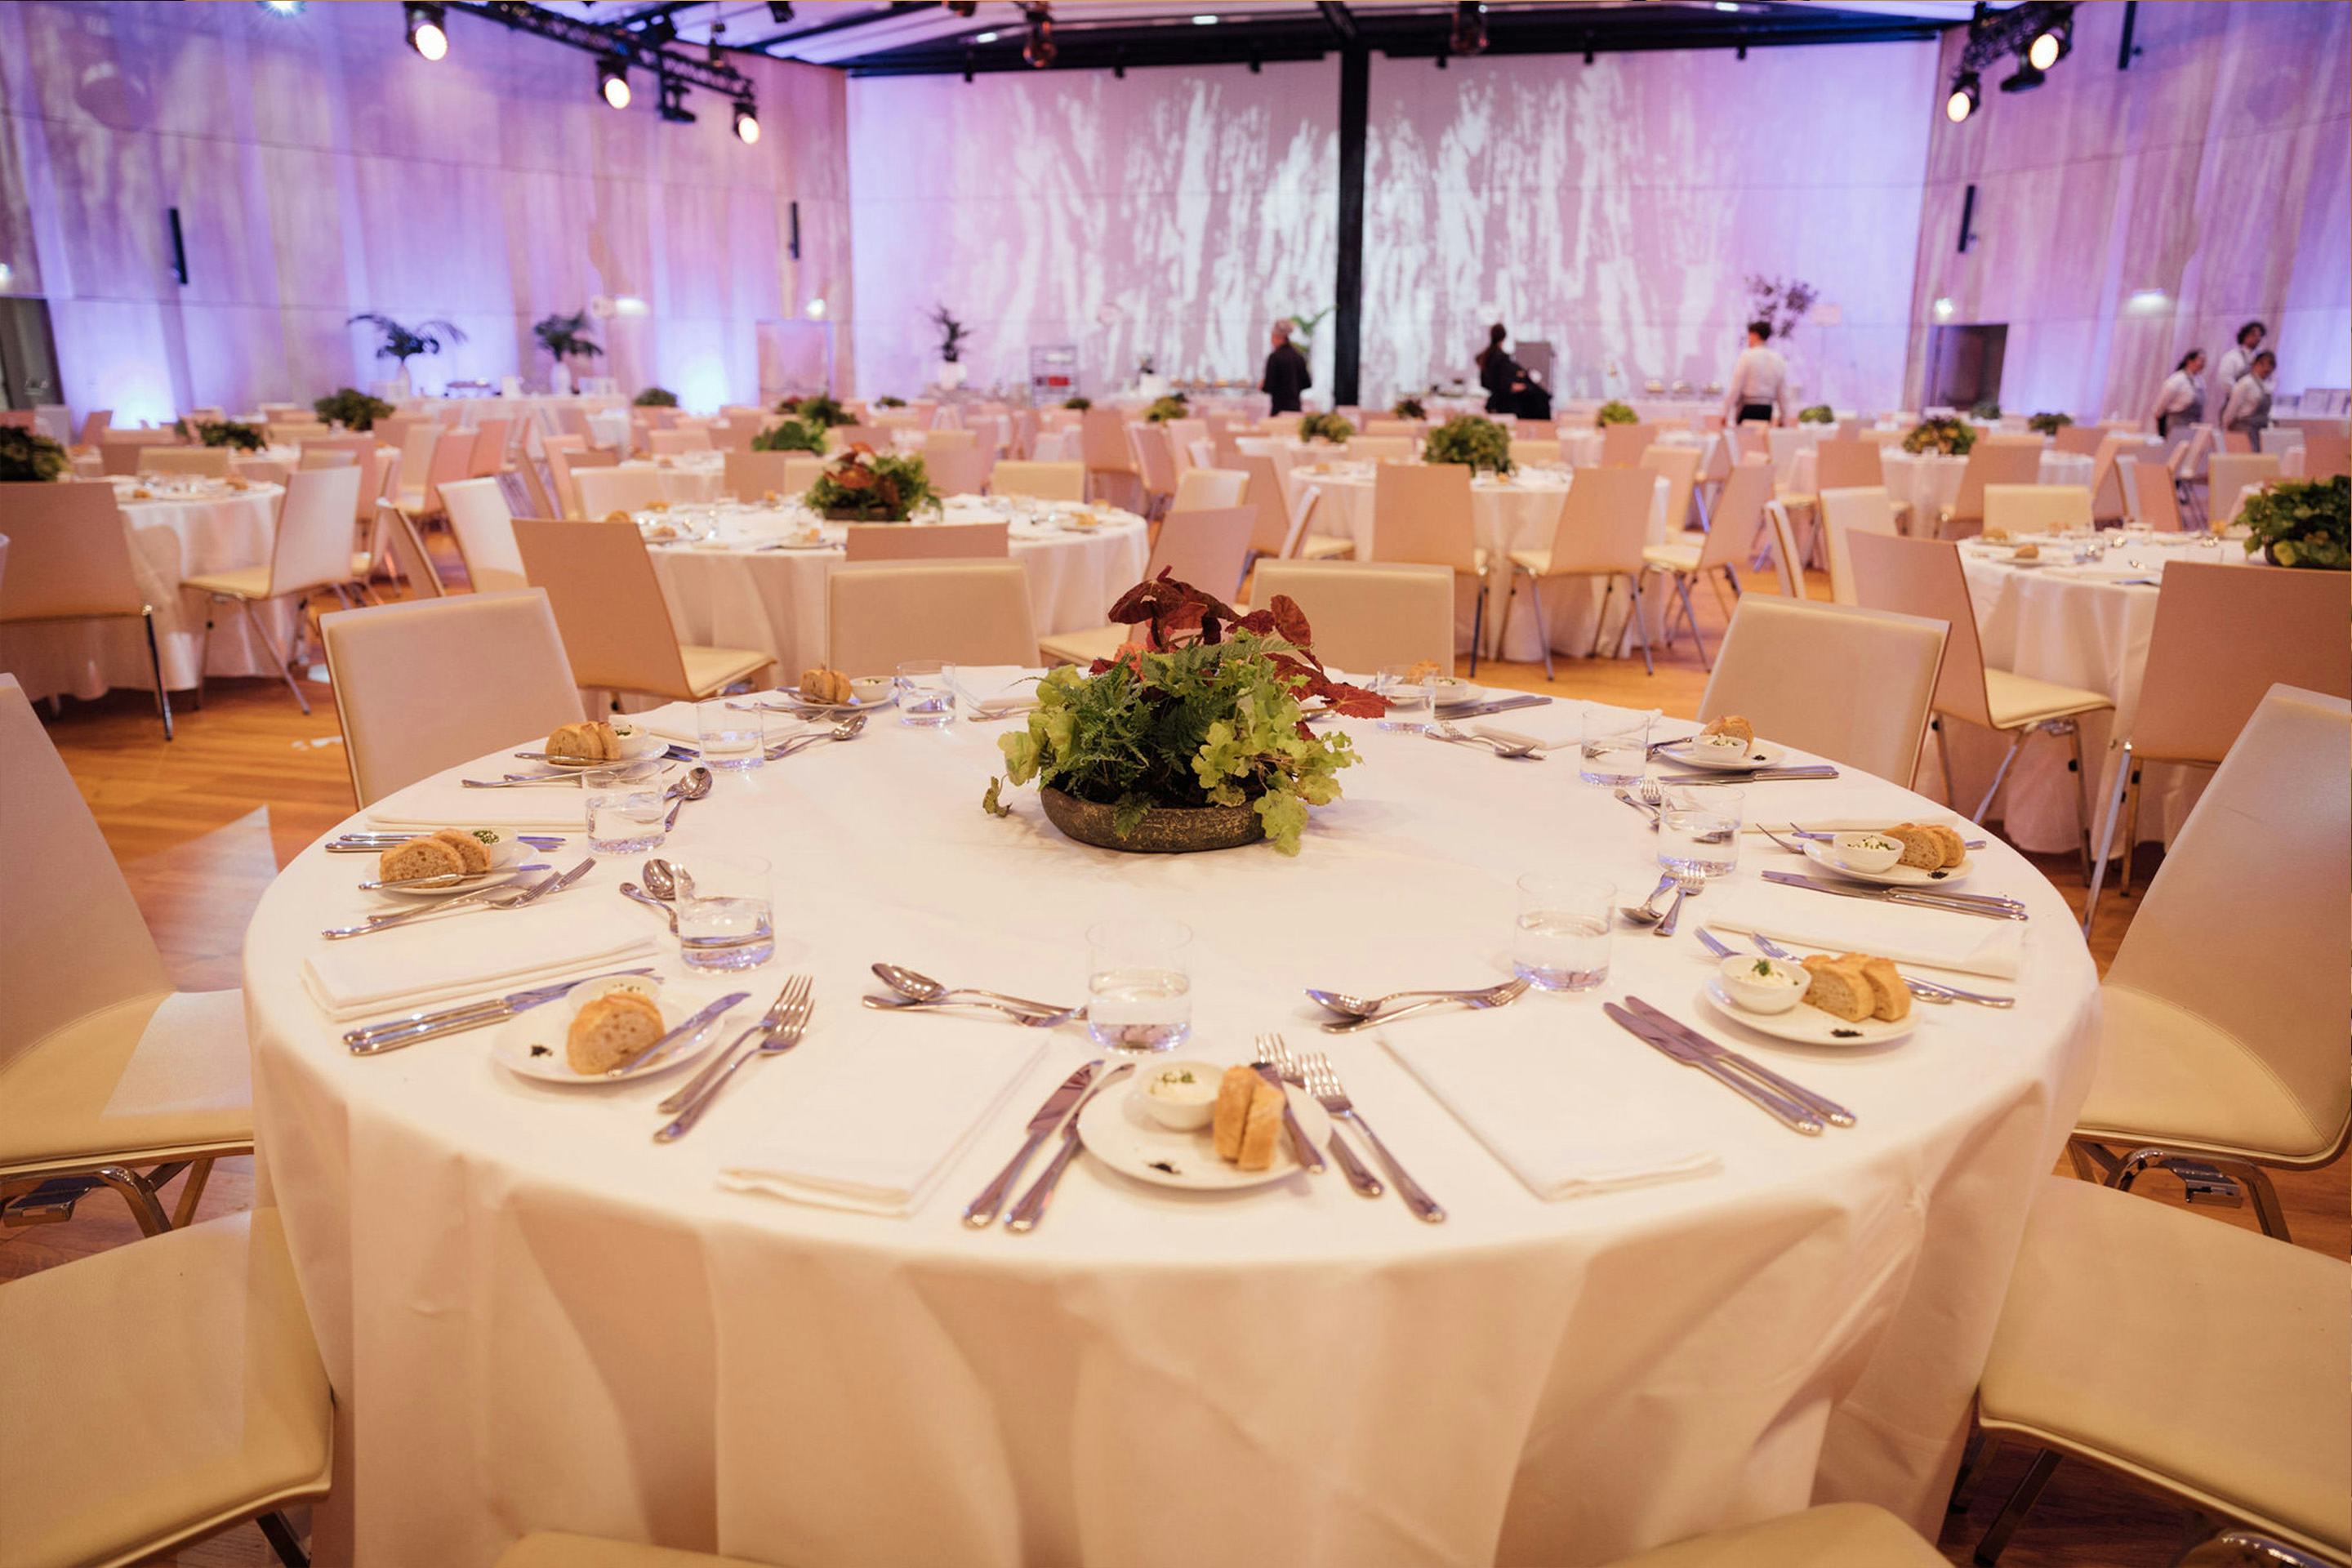 Foto: Runde gedeckte Gala-Tische mit Stuehlen in einem Raum mit Holzboden und einigen Menschen